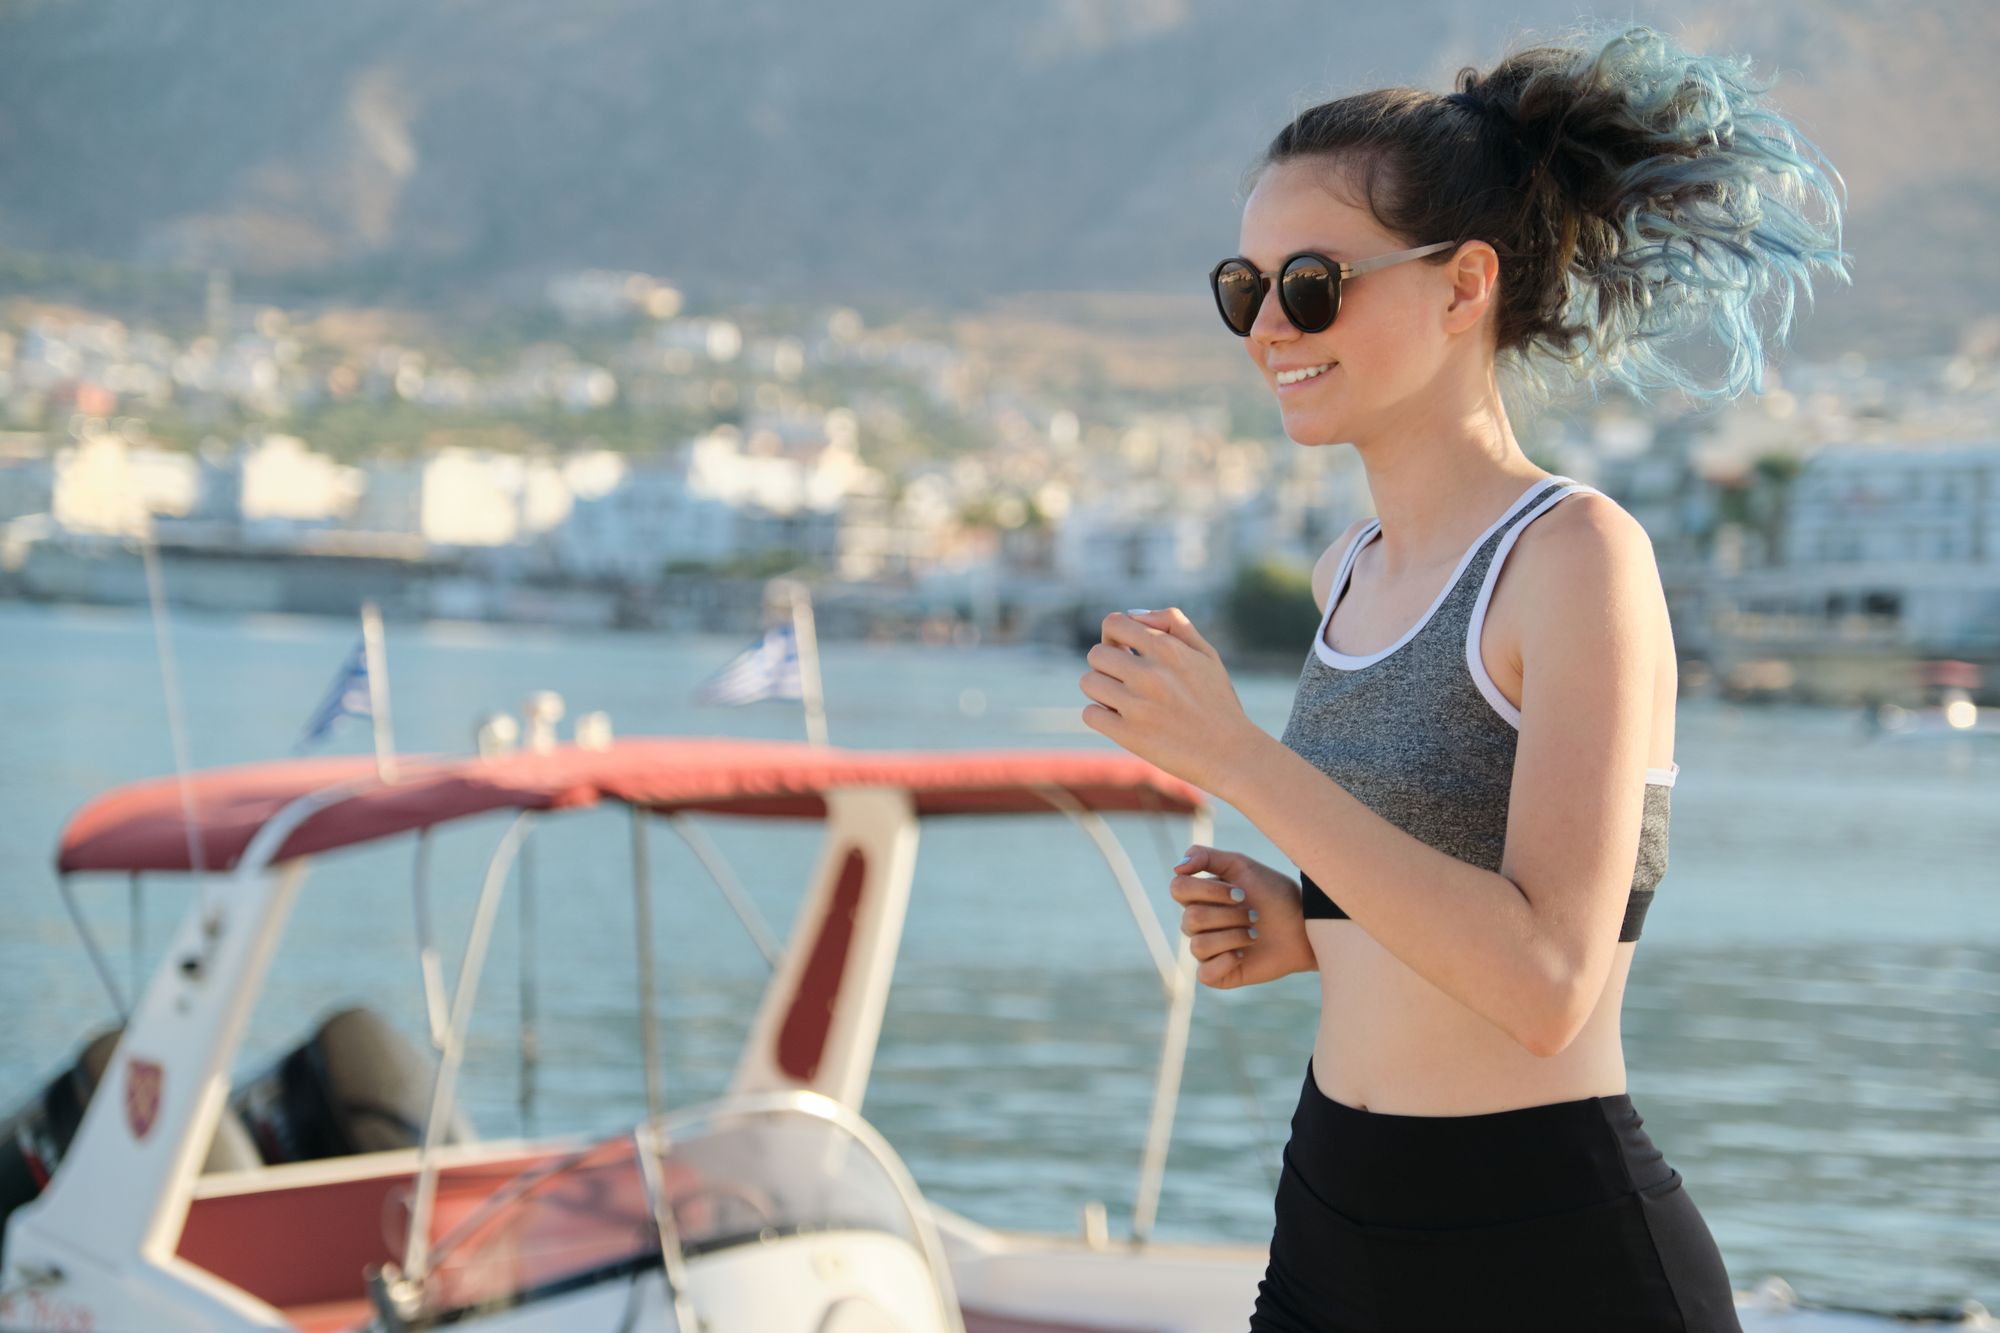 Teen girl exercising outdoor, jogging running at seaside promenade, sunny summer day